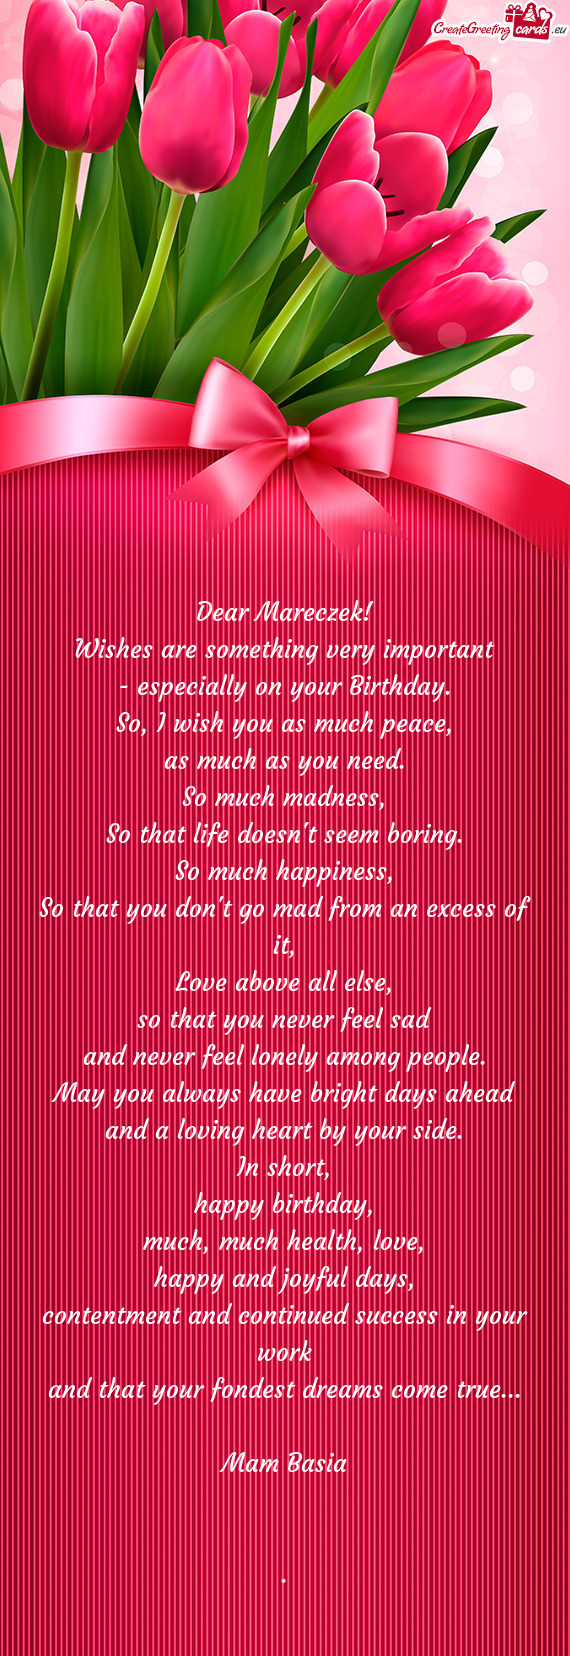 Dear Mareczek